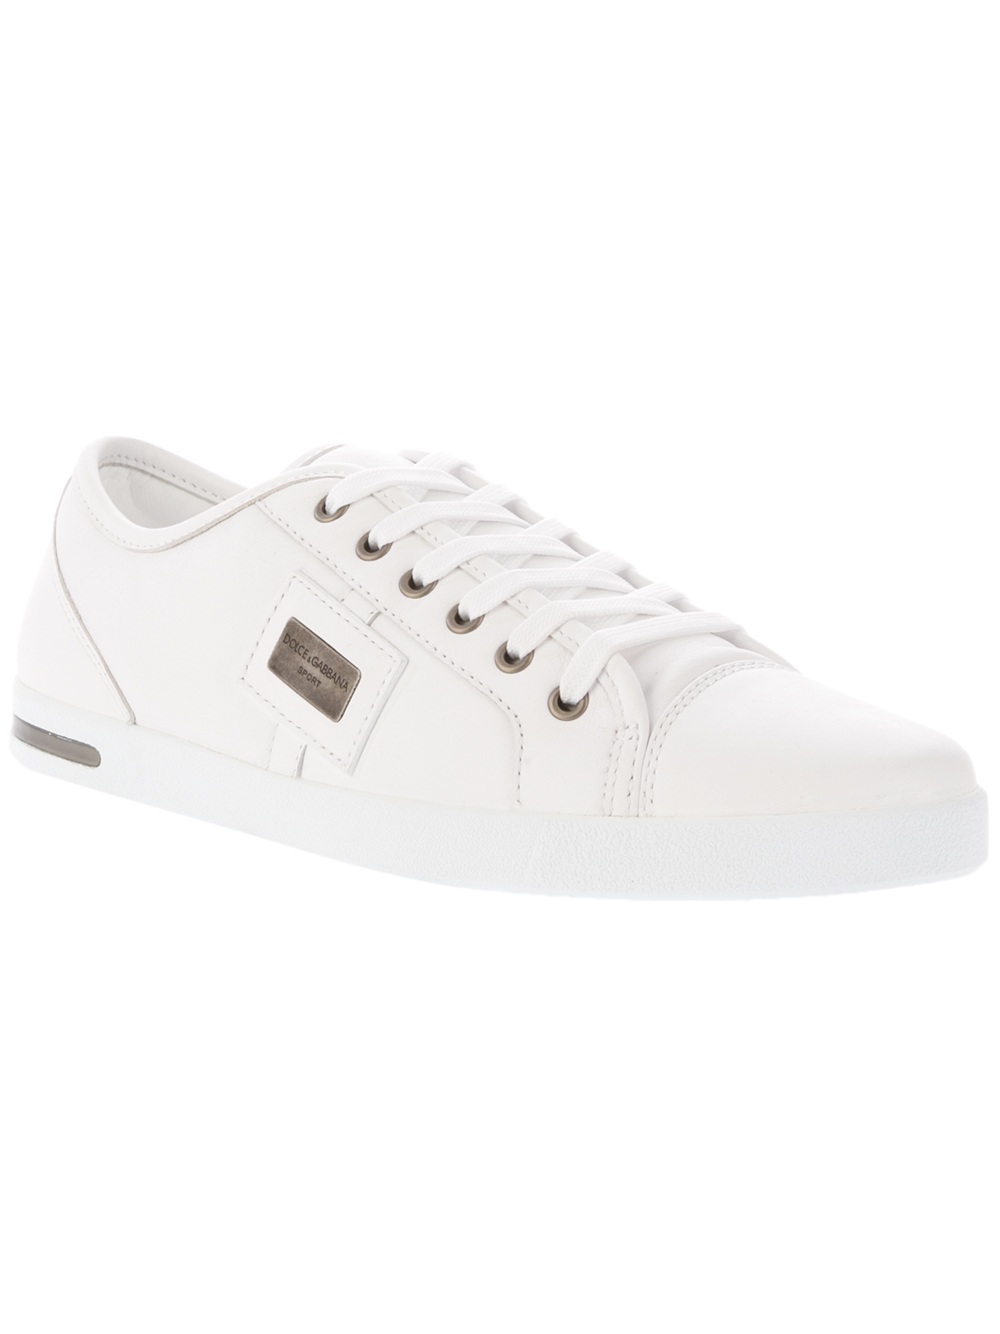 Dolce & Gabbana Dg Sneaker Bianco in White for Men - Lyst